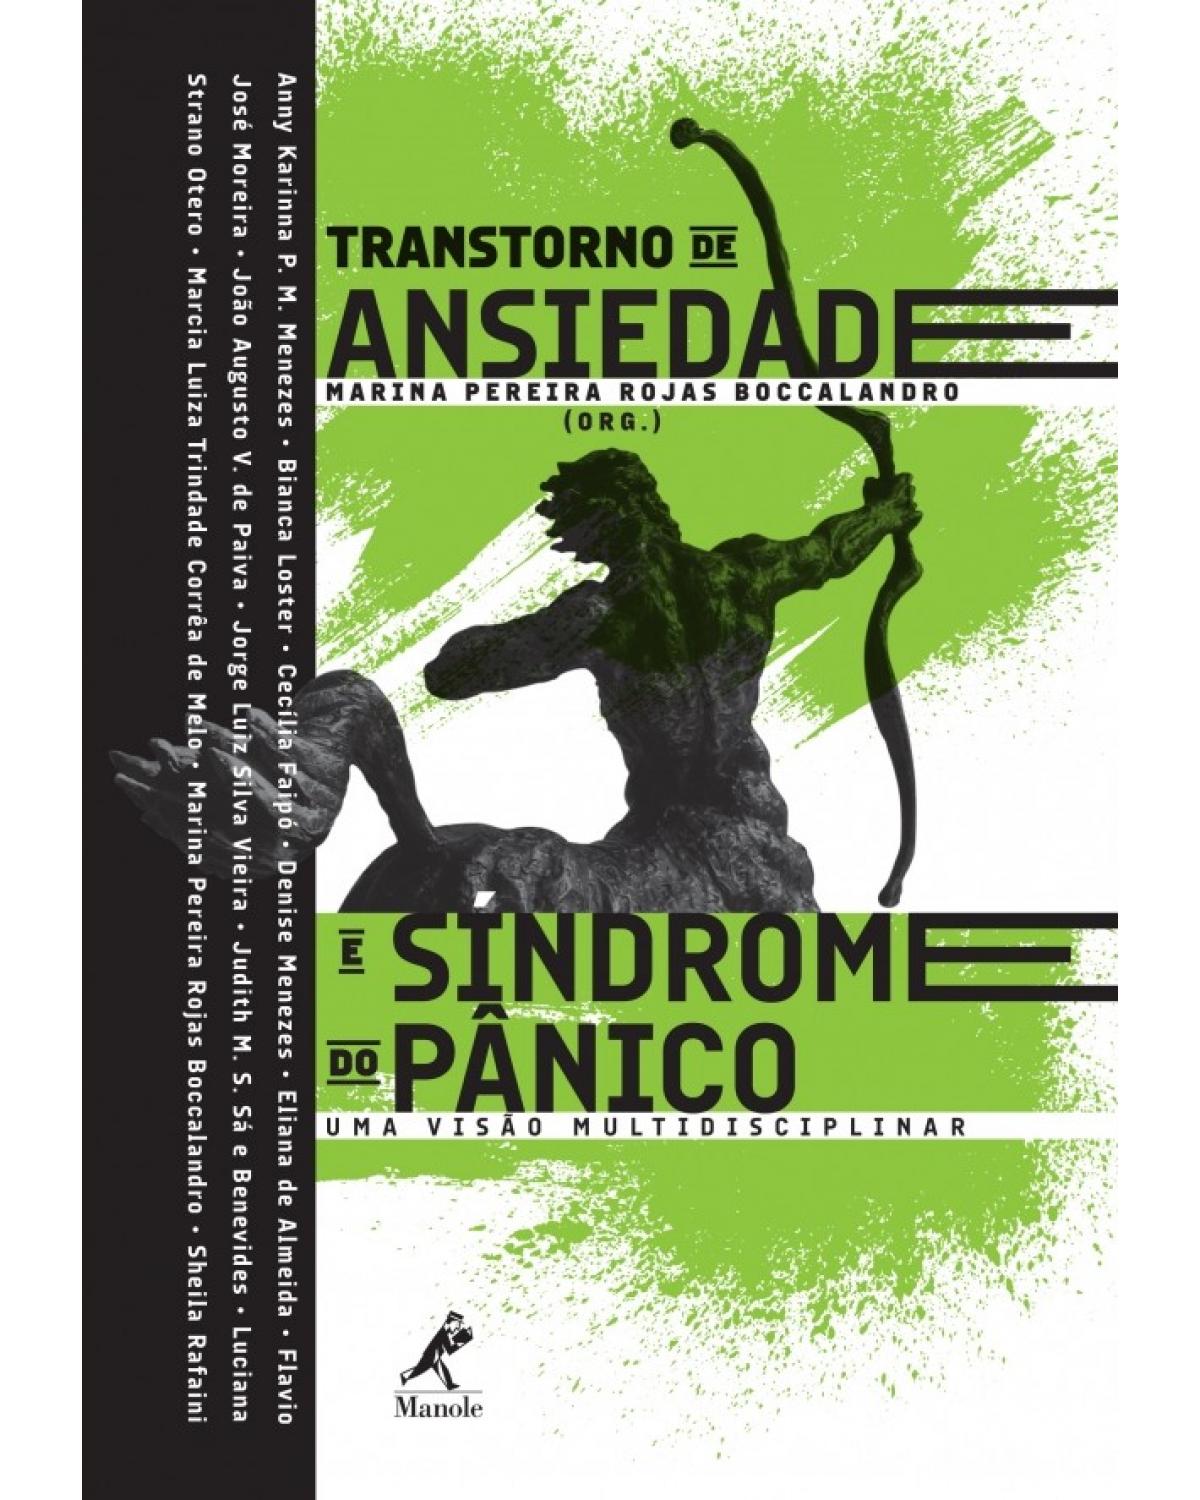 Transtorno de ansiedade e síndrome do pânico - Uma visão multidisciplinar - 1ª Edição | 2016